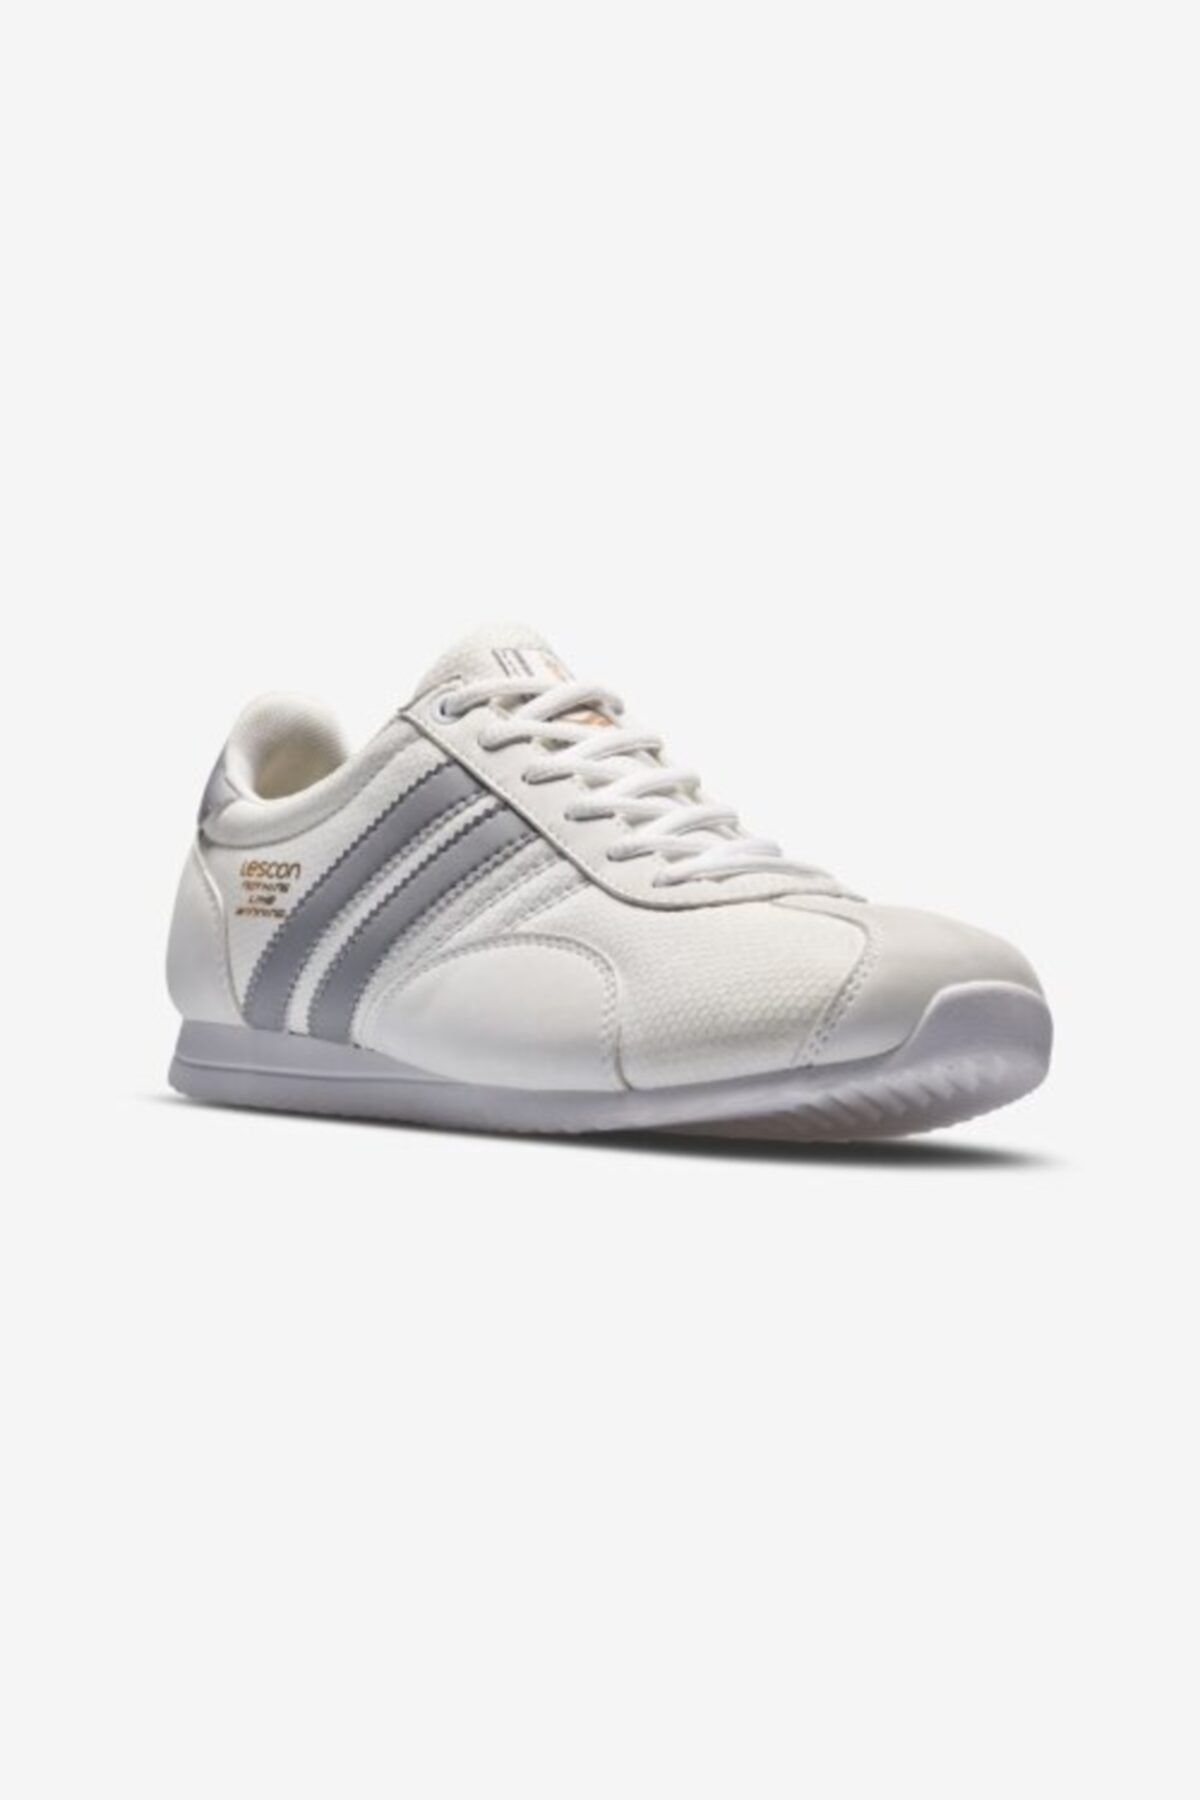 Lescon Erkek Sneaker Ayakkabı L-6530 - Beyaz - 43